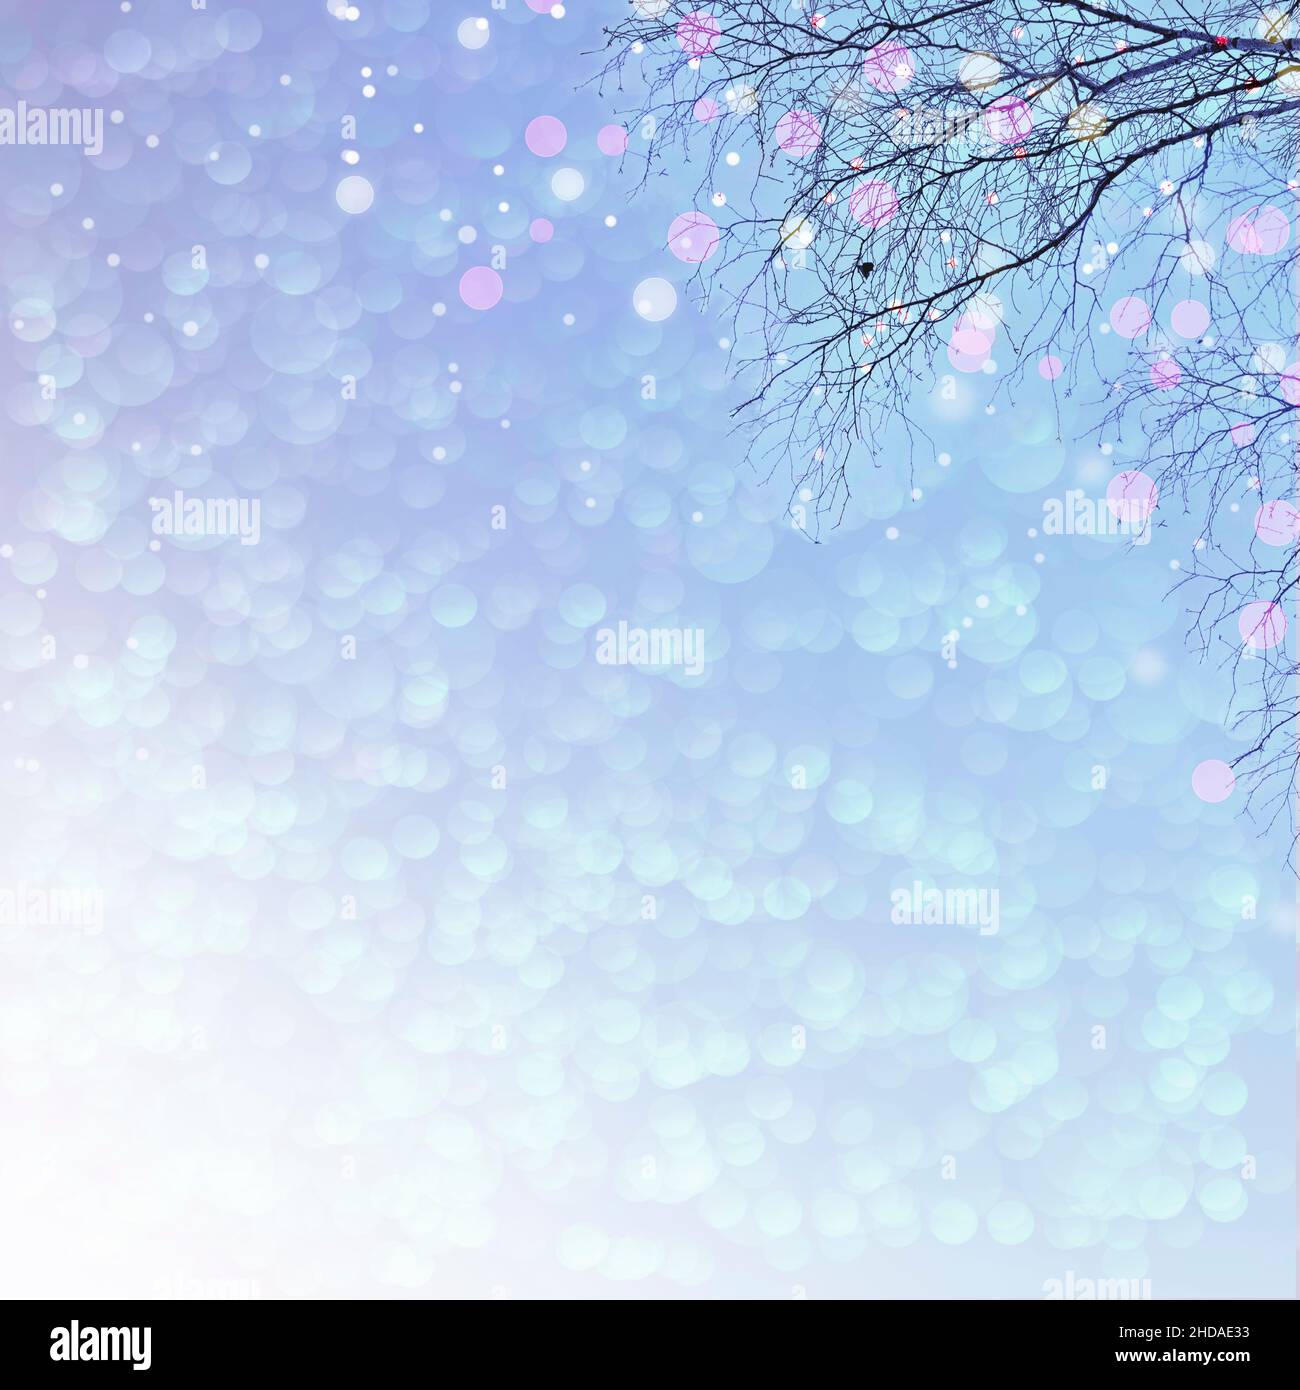 Delicado fondo de Navidad azul pastel - rama de árbol con luces festivas iluminadas. Cuento de hadas de la naturaleza invernal. Diseño minimalista para banners, Foto de stock